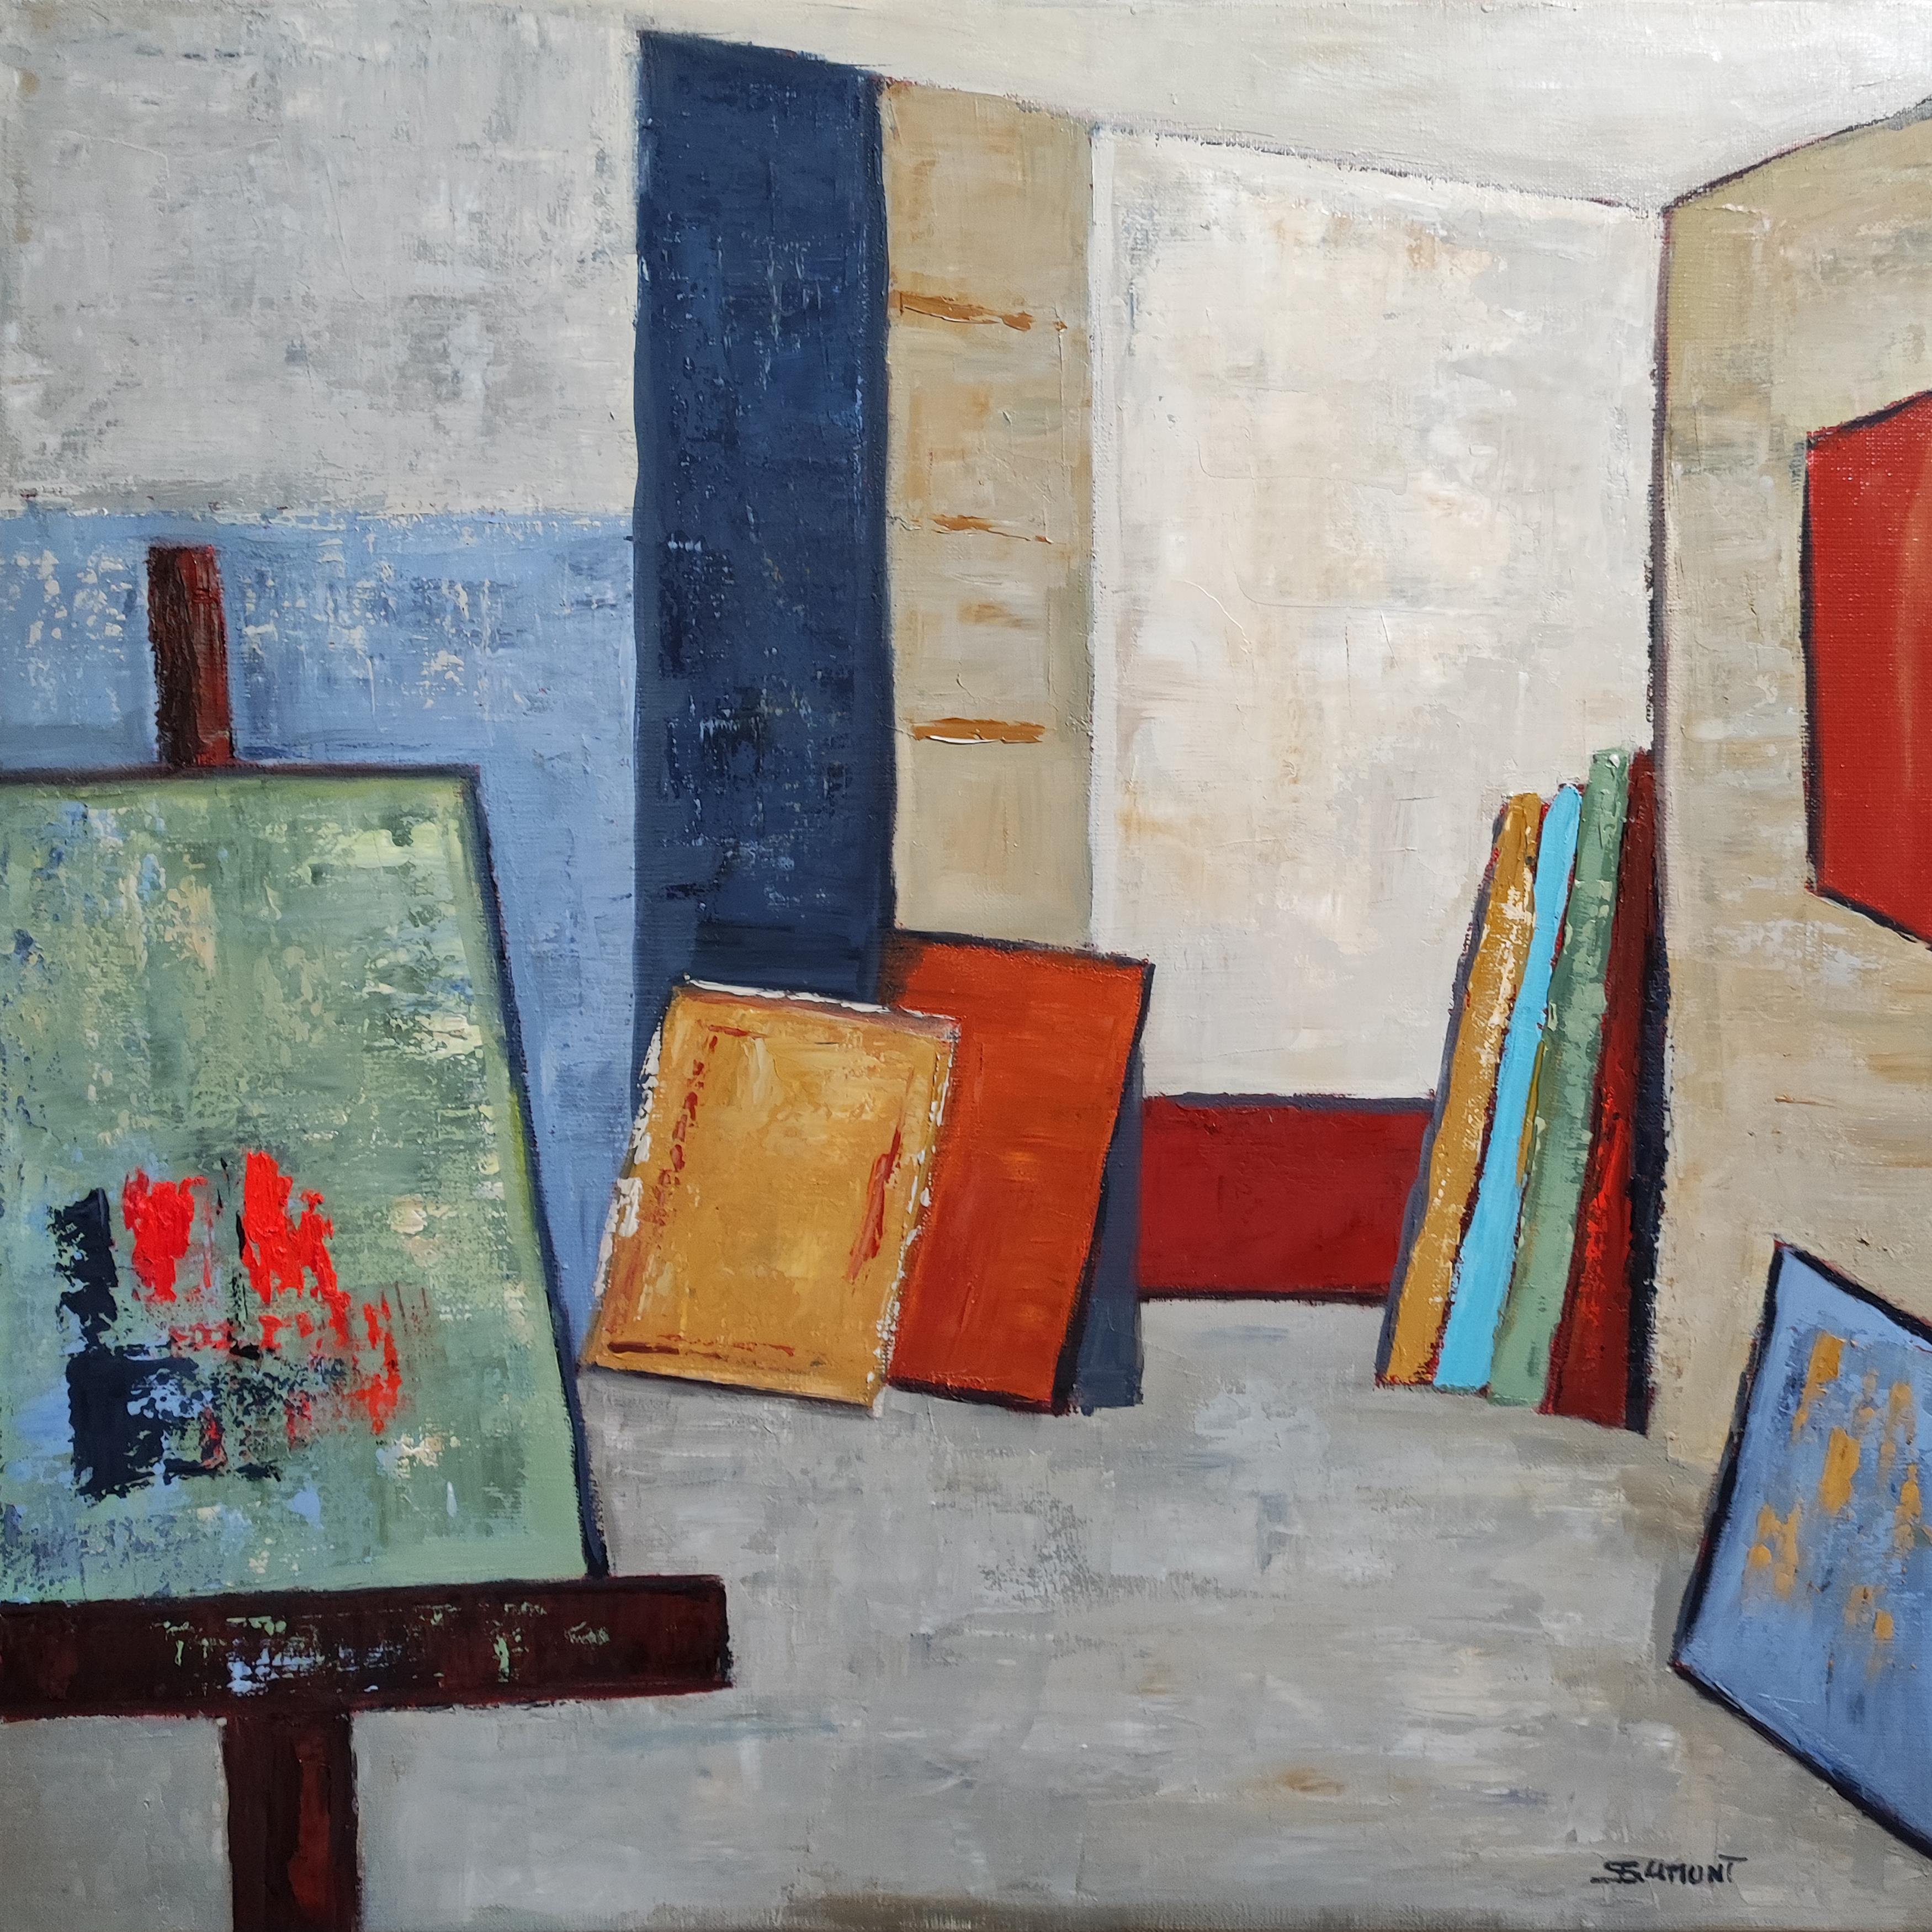 Studio 18,  abstrakt, öl auf leinwand, zeitgenössisch, expressionismus, französische kunst (Geometrische Abstraktion), Painting, von SOPHIE DUMONT